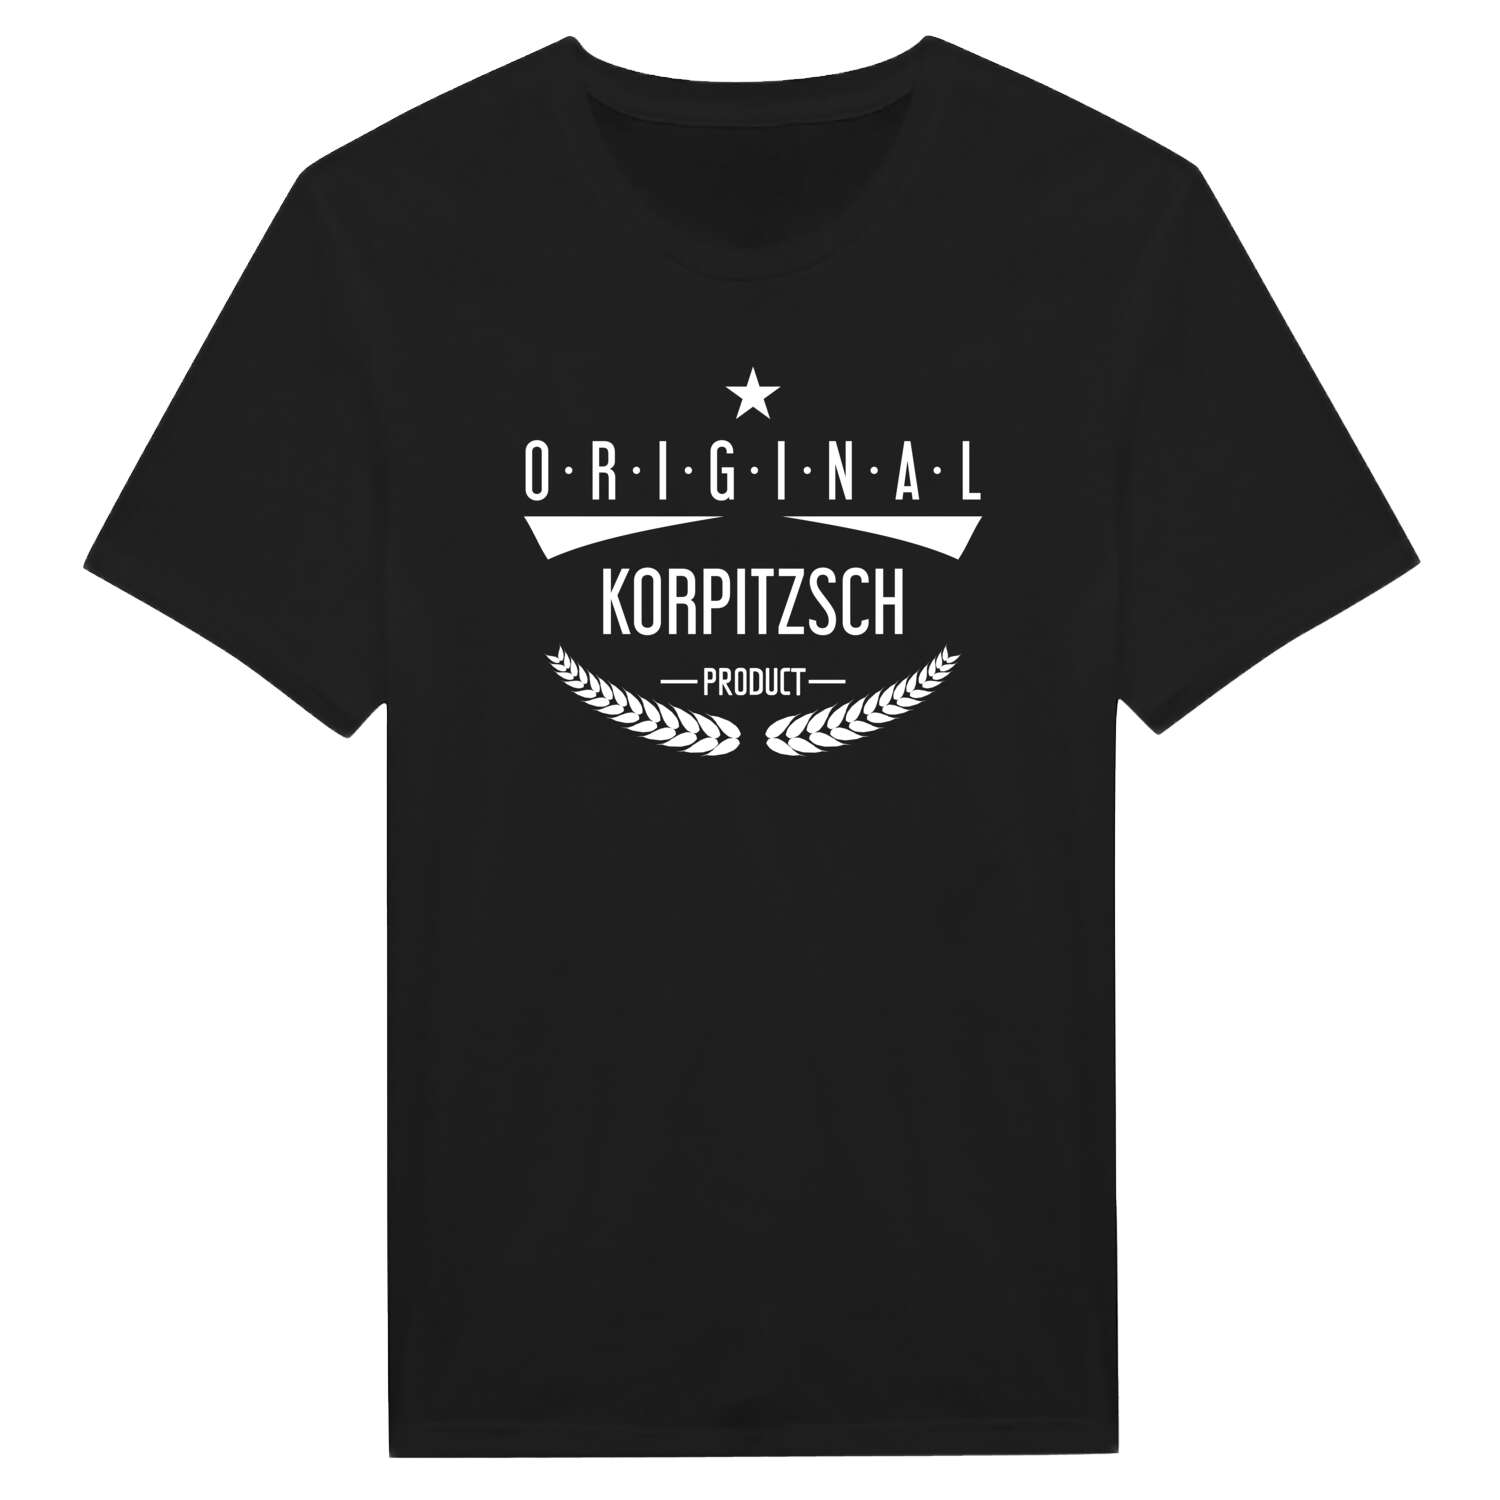 Korpitzsch T-Shirt »Original Product«